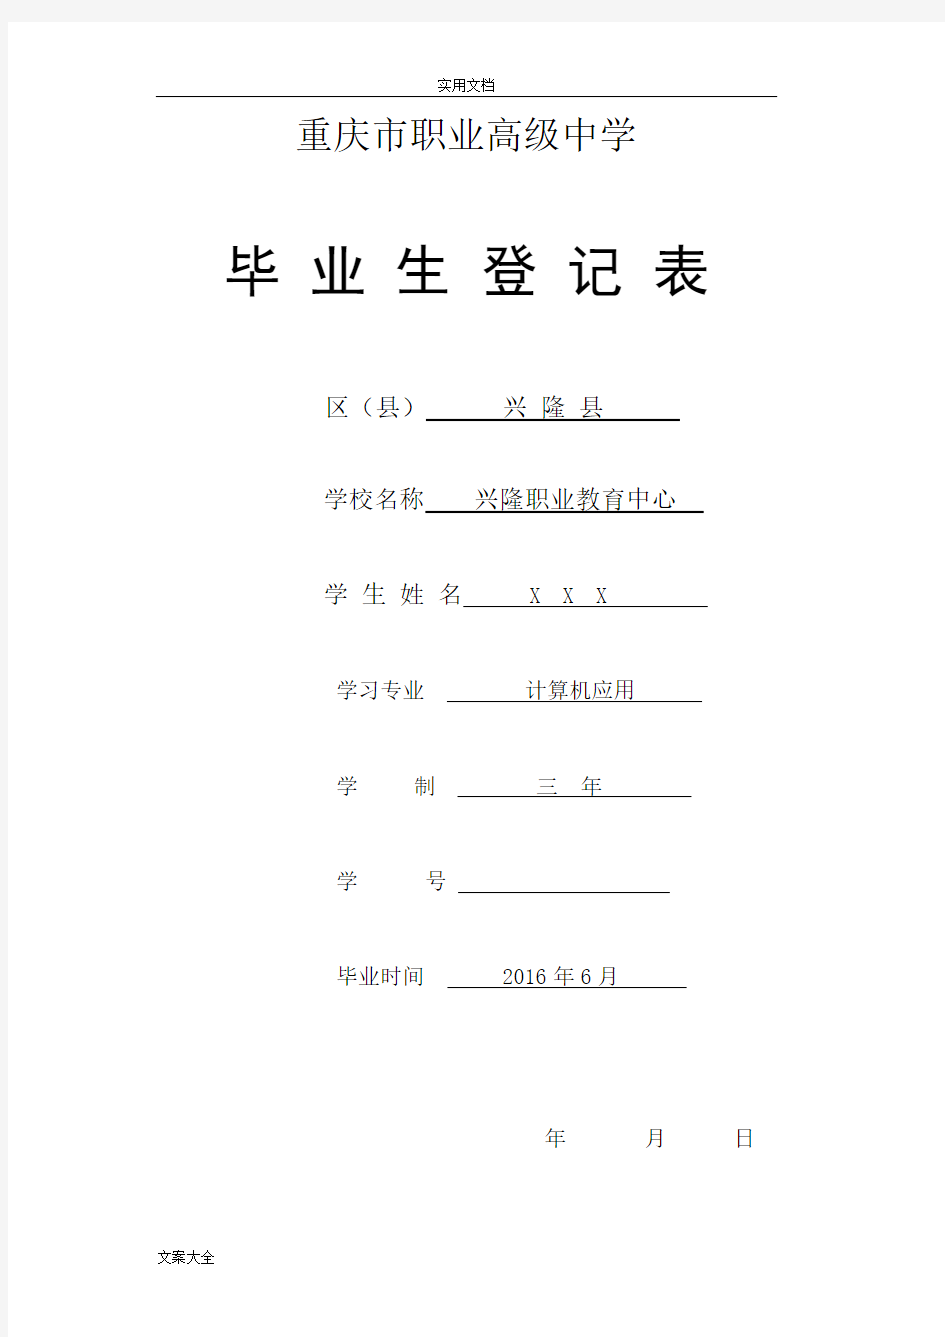 重庆市职业高中毕业生登记表样本